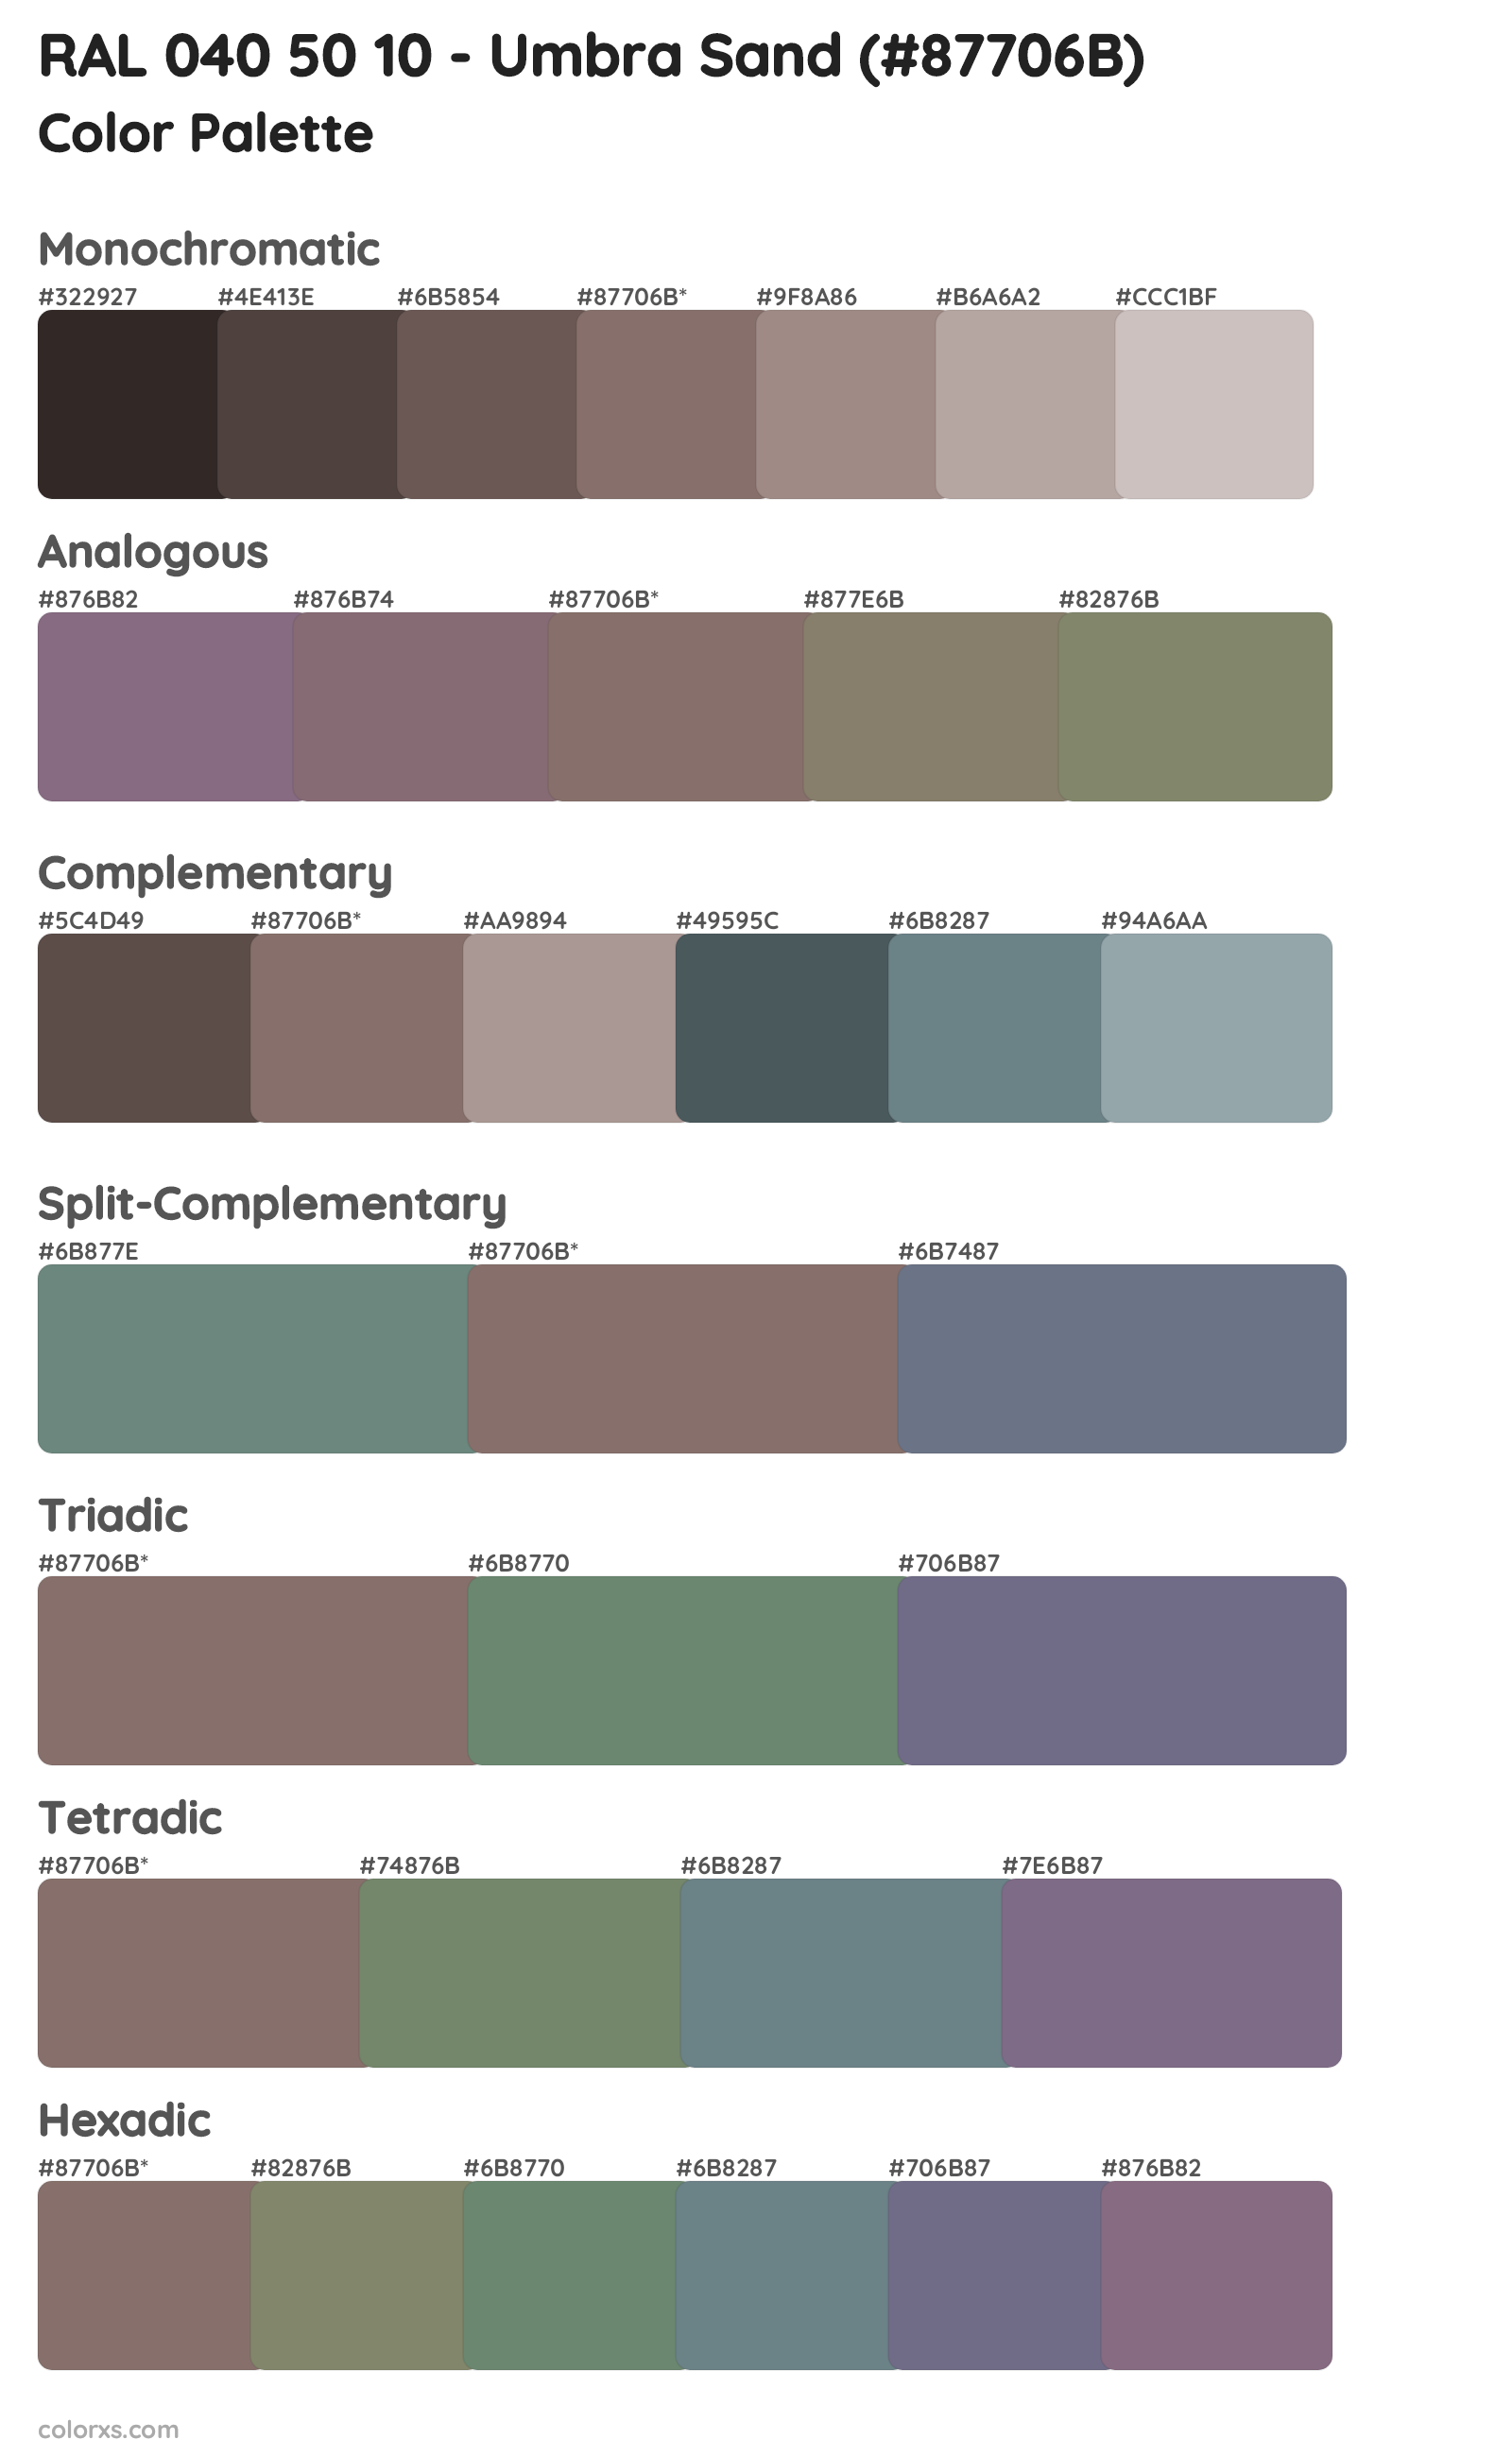 RAL 040 50 10 - Umbra Sand Color Scheme Palettes